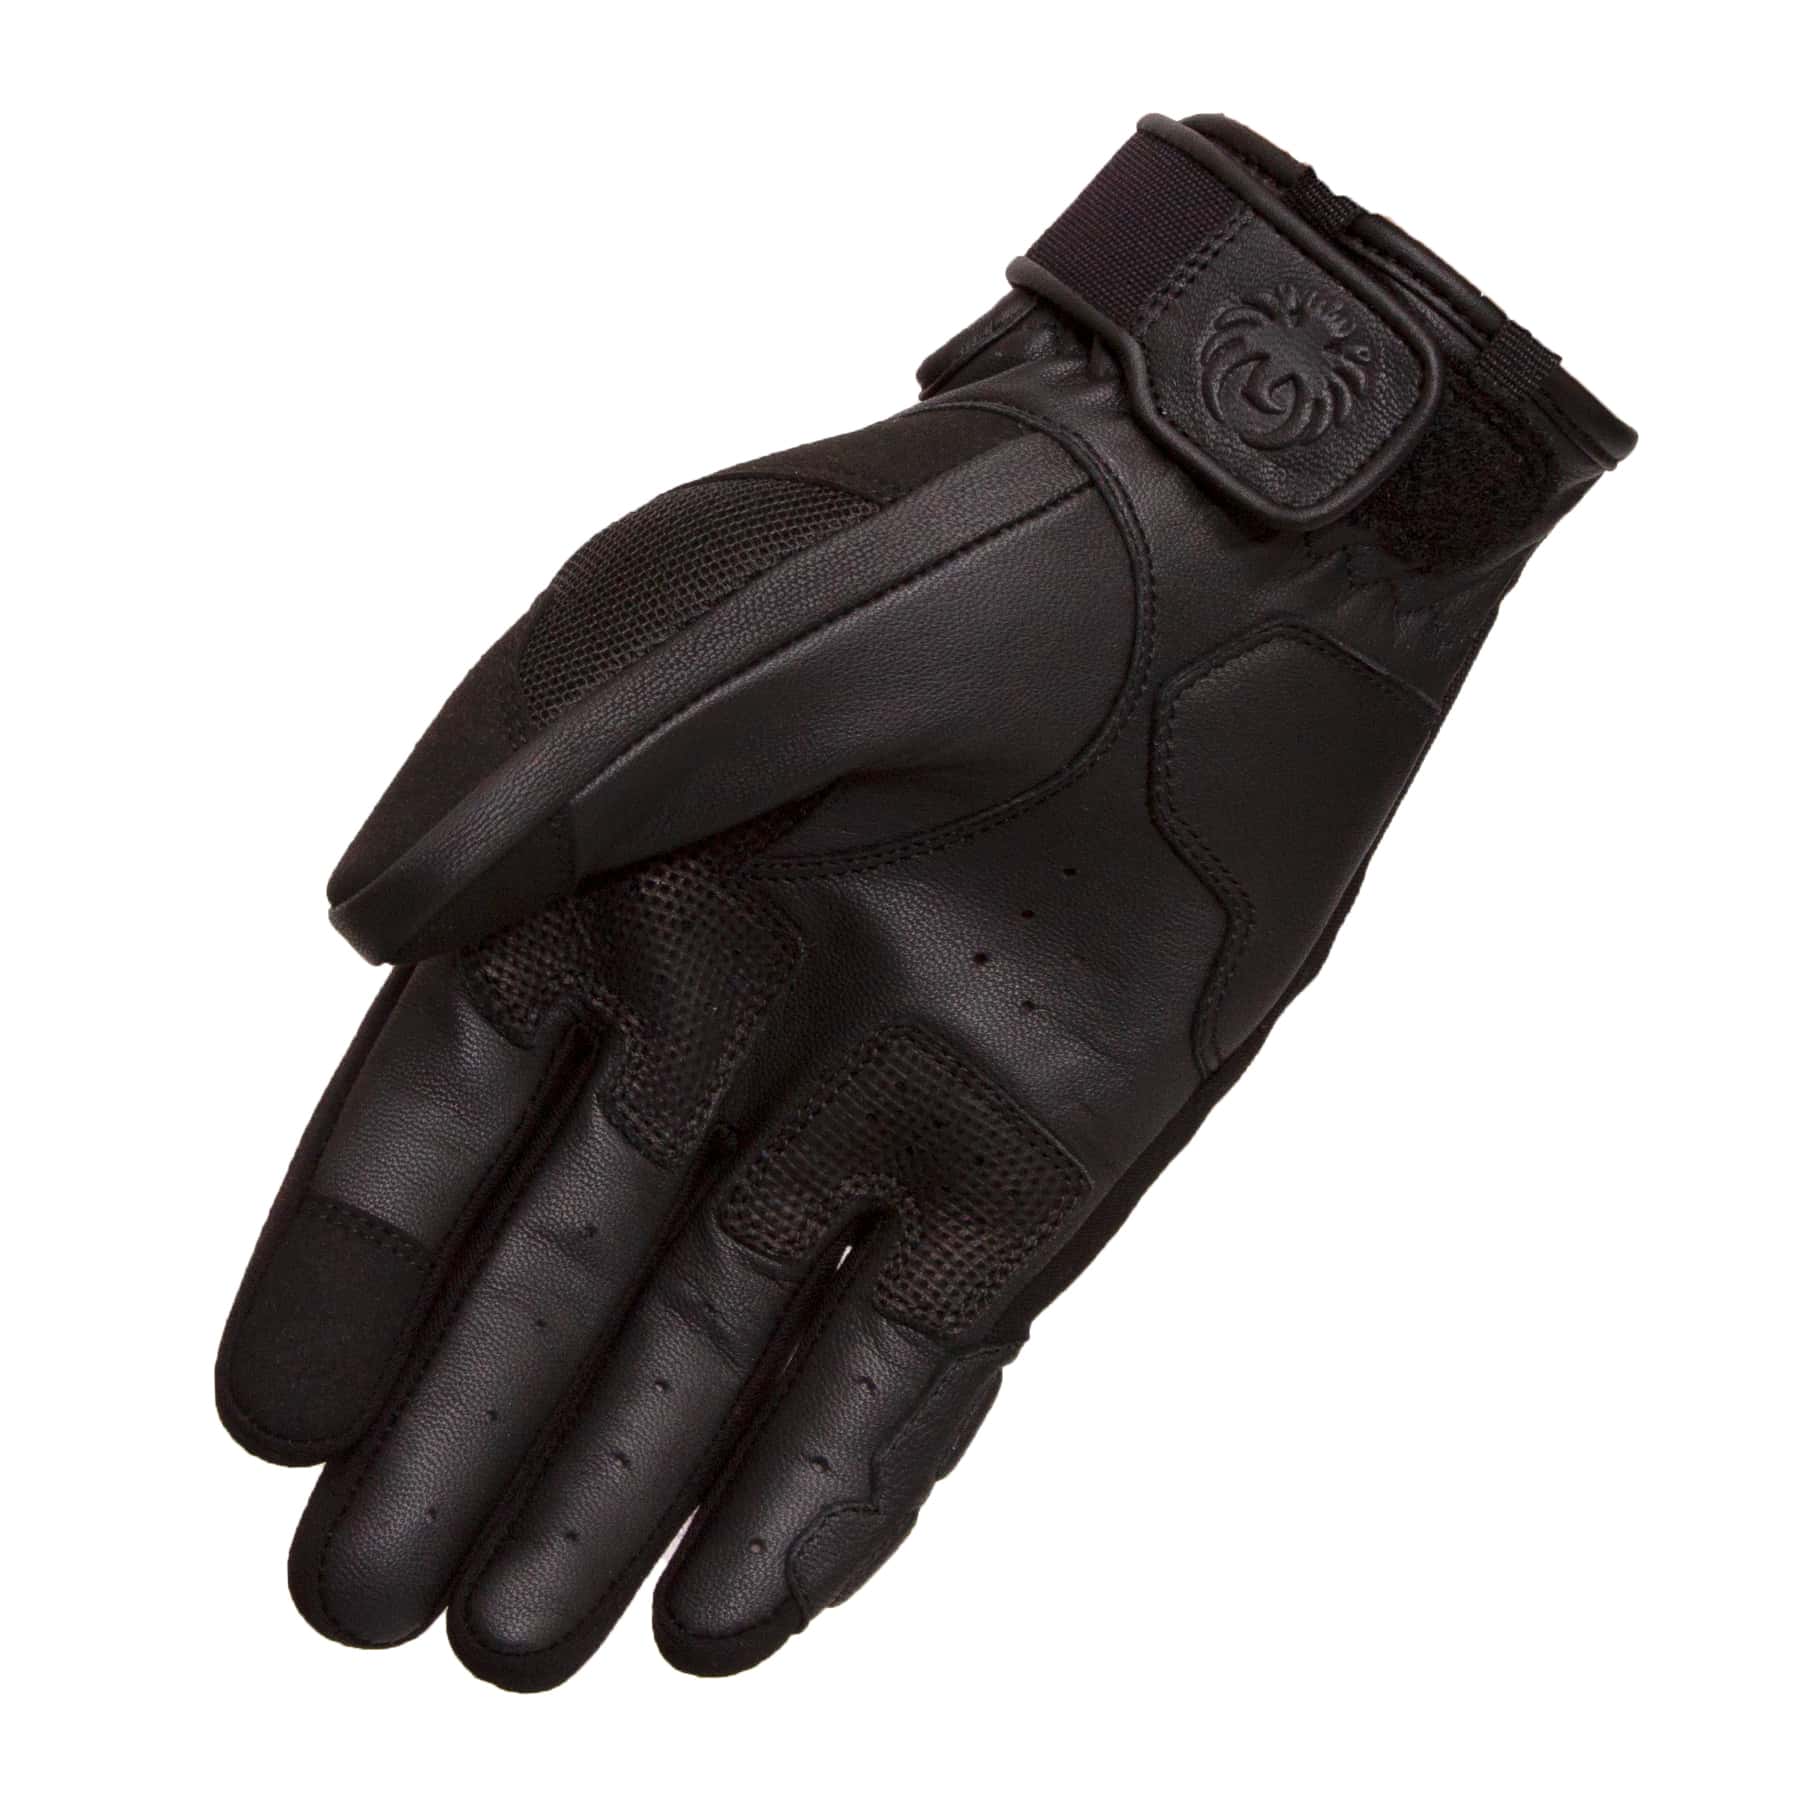 Merlin Kaplan mesh glove in black